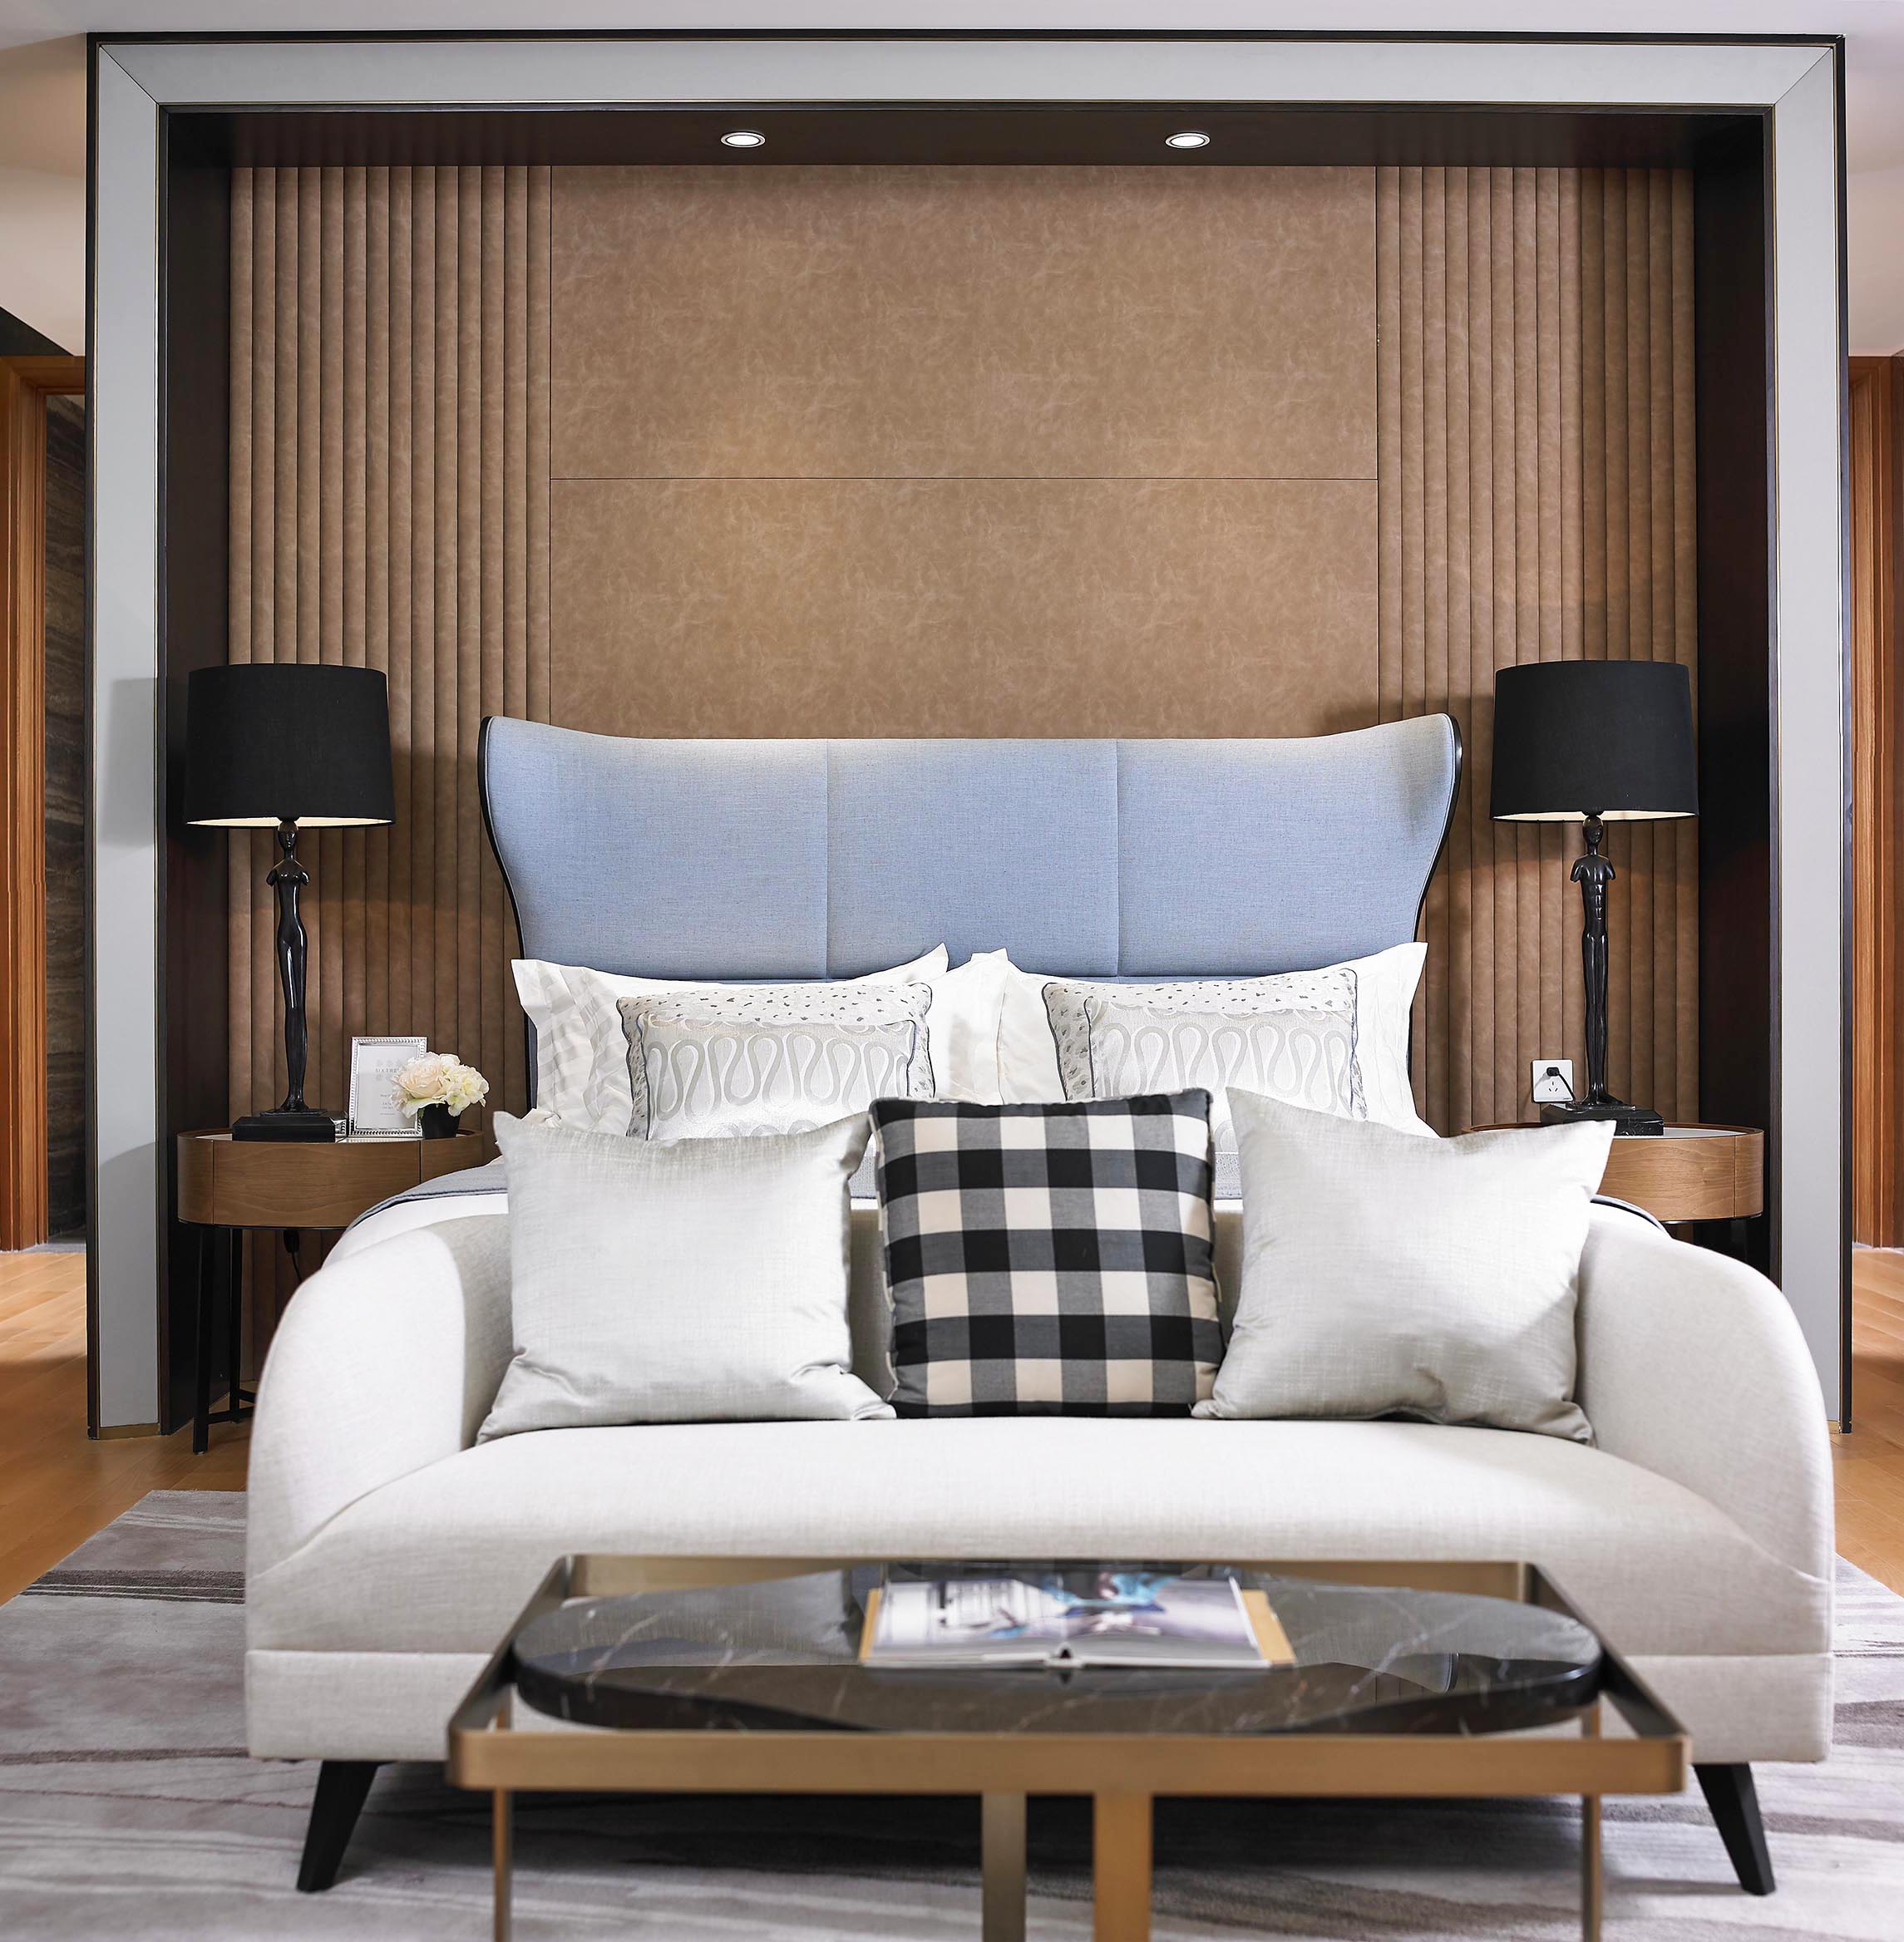 يمكن تخصيص الصين الحديثة المصممة مجموعة أريكة فاخرة أثاث غرفة المعيشة السكنية